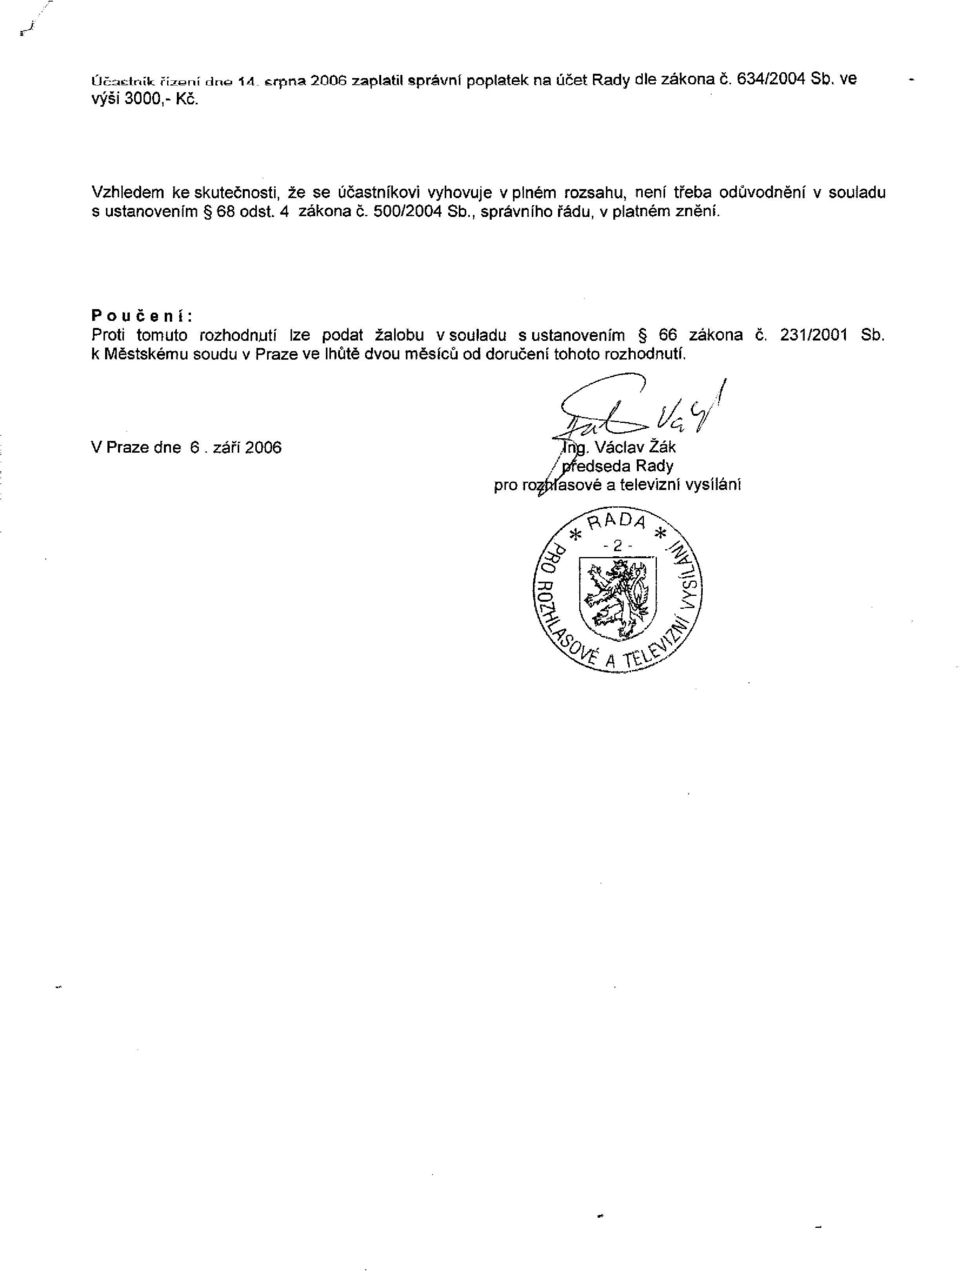 4 zákona č. 500/2004 Sb., správního řádu, v platném znění.